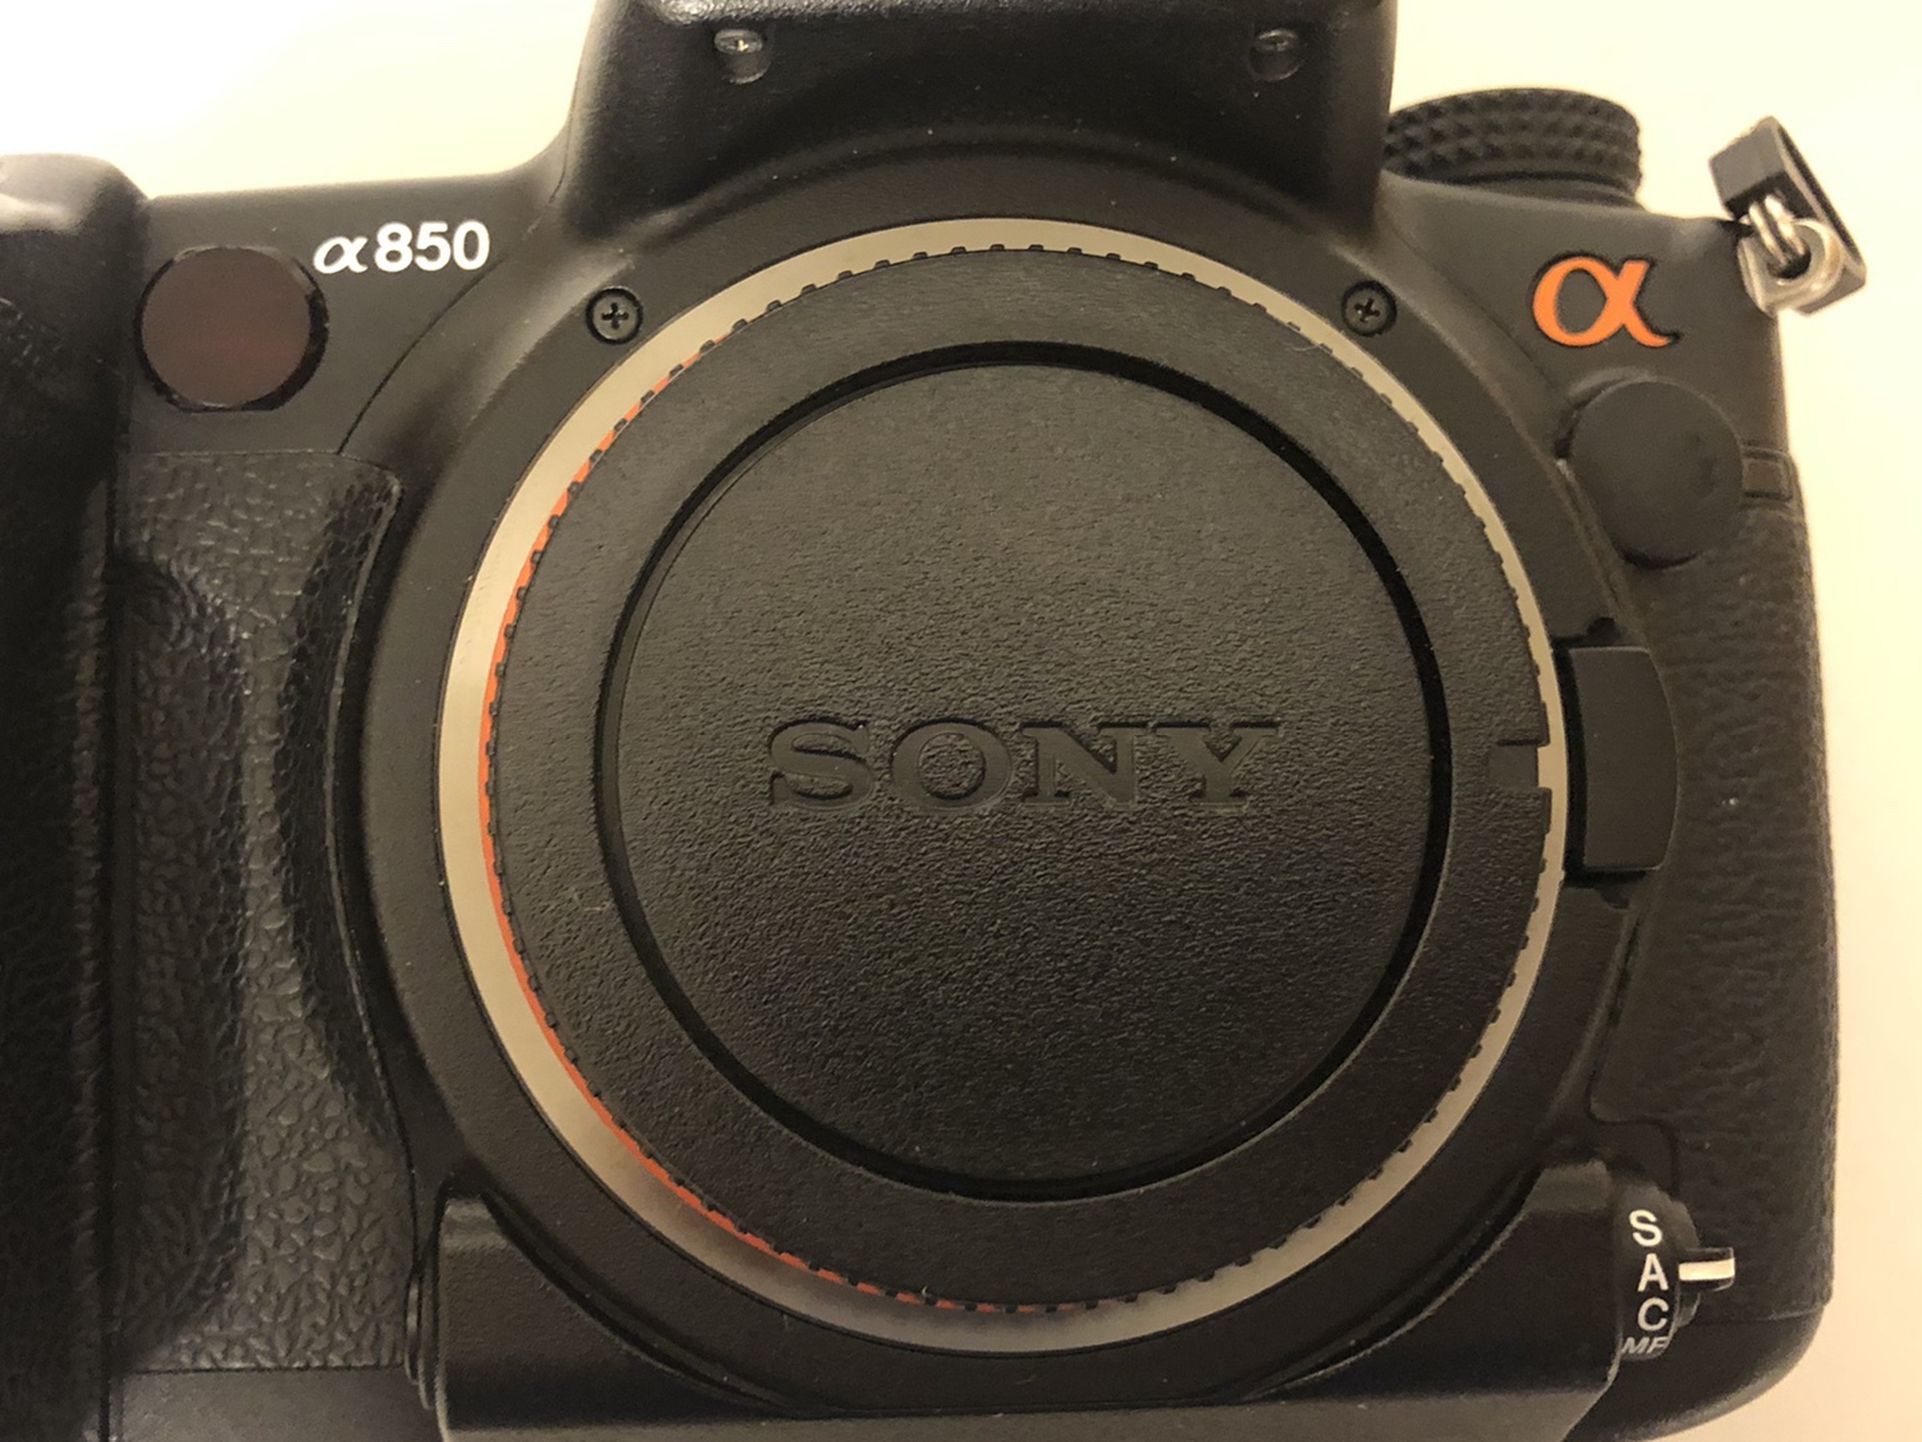 Sony A850 Dslr